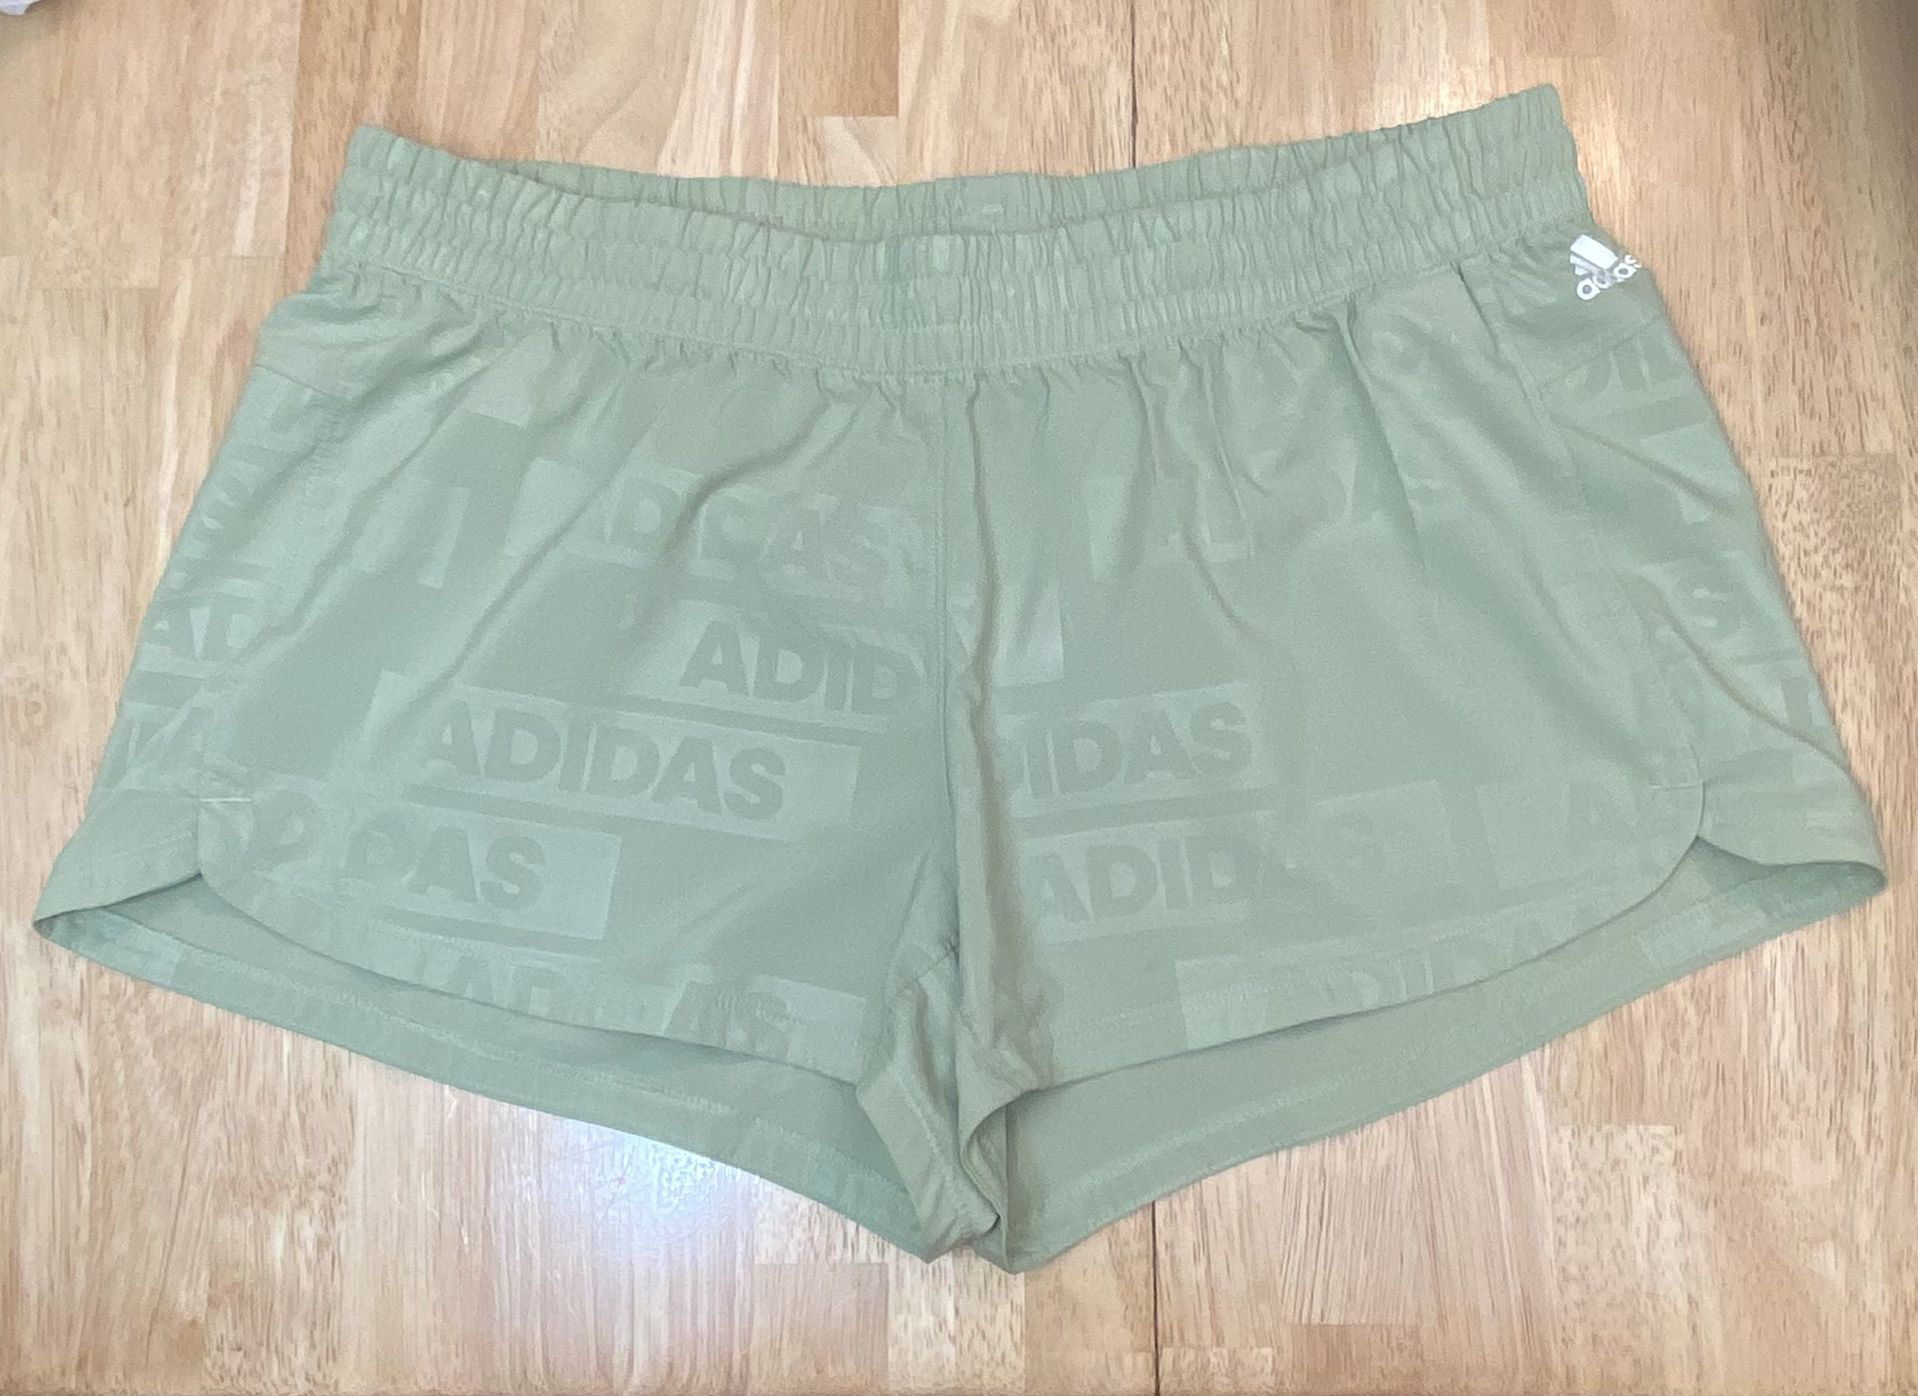 Adidas - Size large - Athletic Shorts